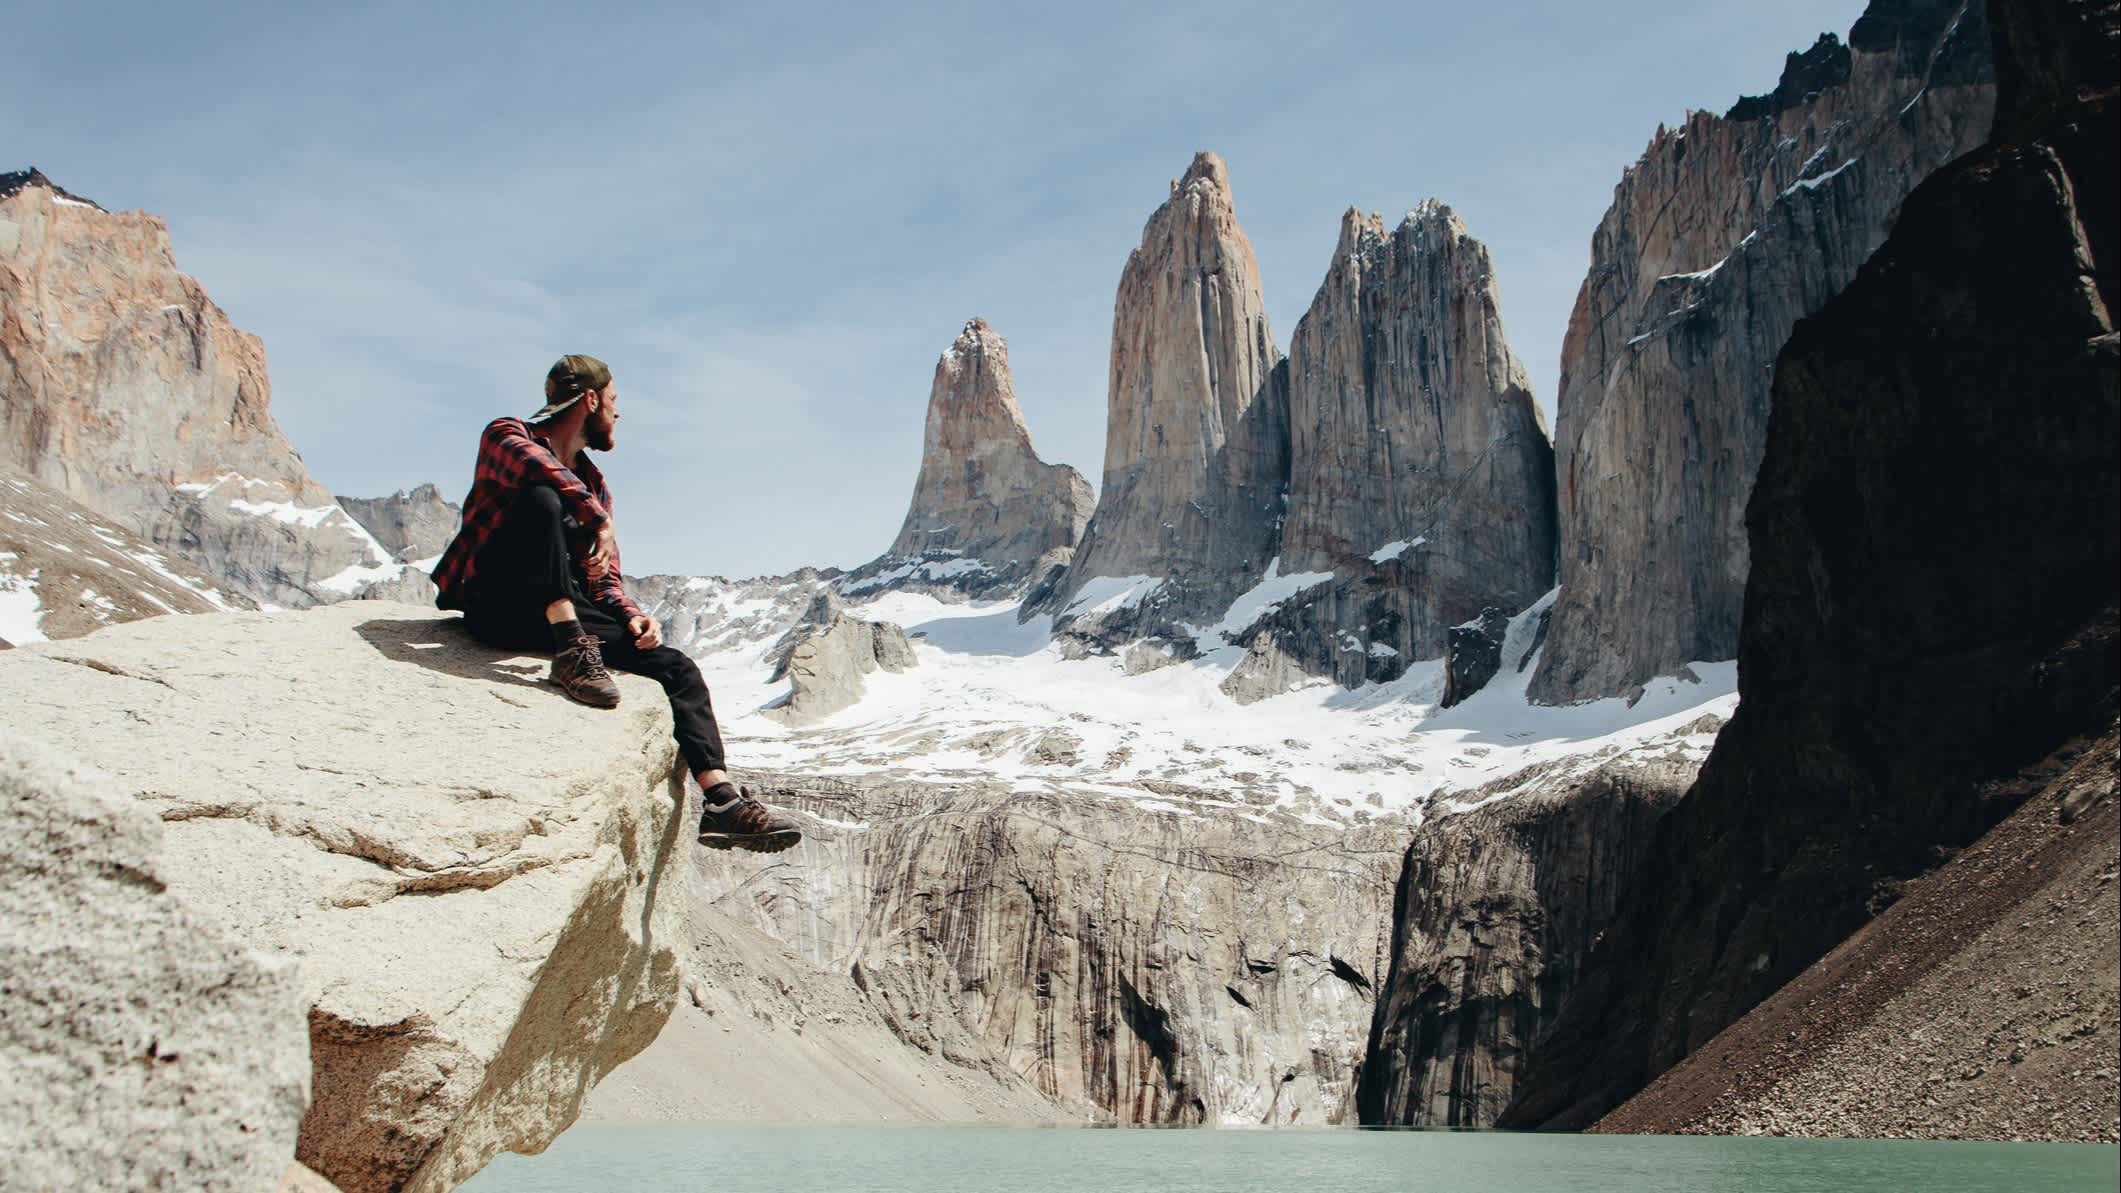 Der Mensch blickt auf den malerischen Blick auf den Nationalpark Torres del Paine, Argentinien. 

